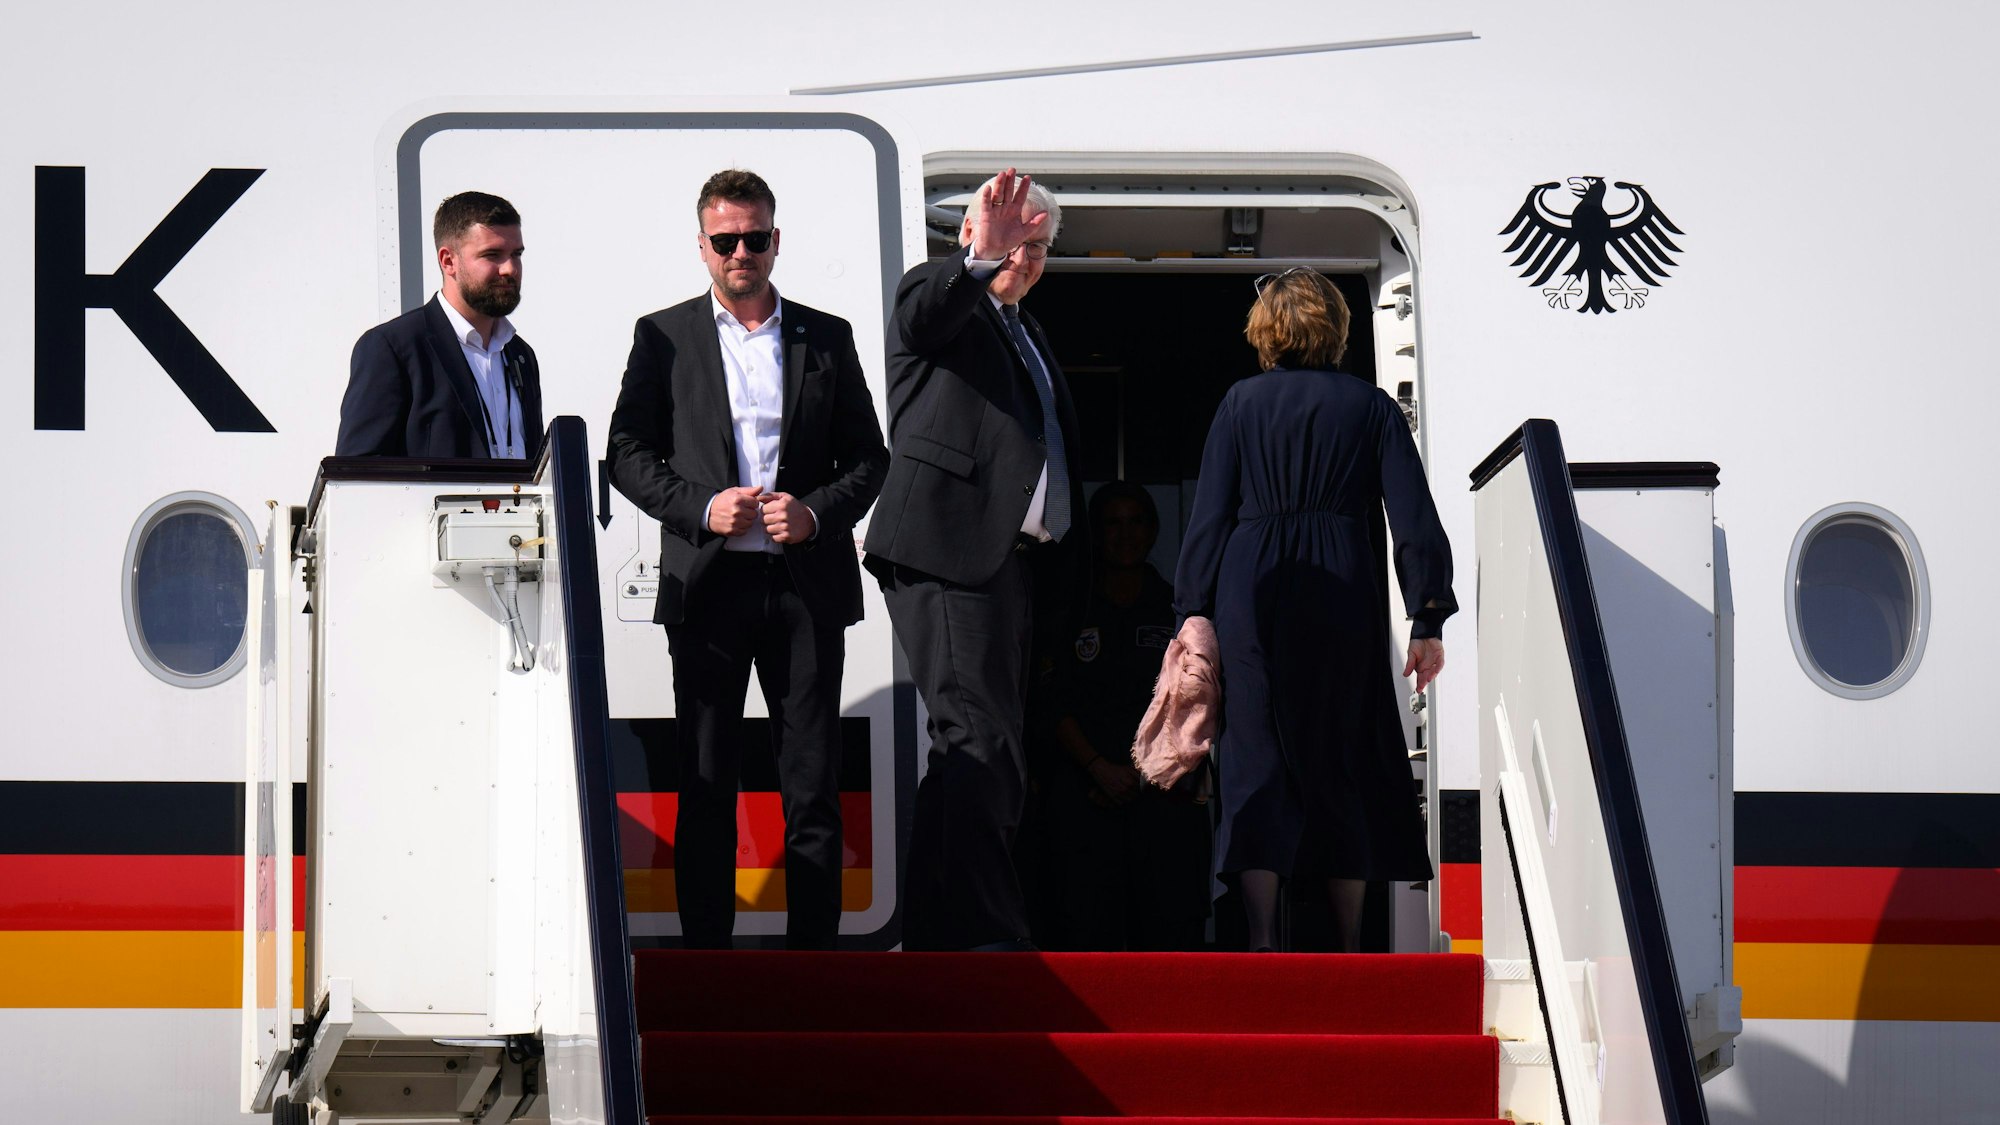 Bundespräsident Frank-Walter Steinmeier und seine Frau Elke Büdenbender steigen auf dem Internationalen Flughafen Hamad (Katar) in ein Flugzeug der Flugbereitschaft der Bundeswehr, um zurück nach Berlin zu fliegen. Warten mussten sie diesmal nicht.